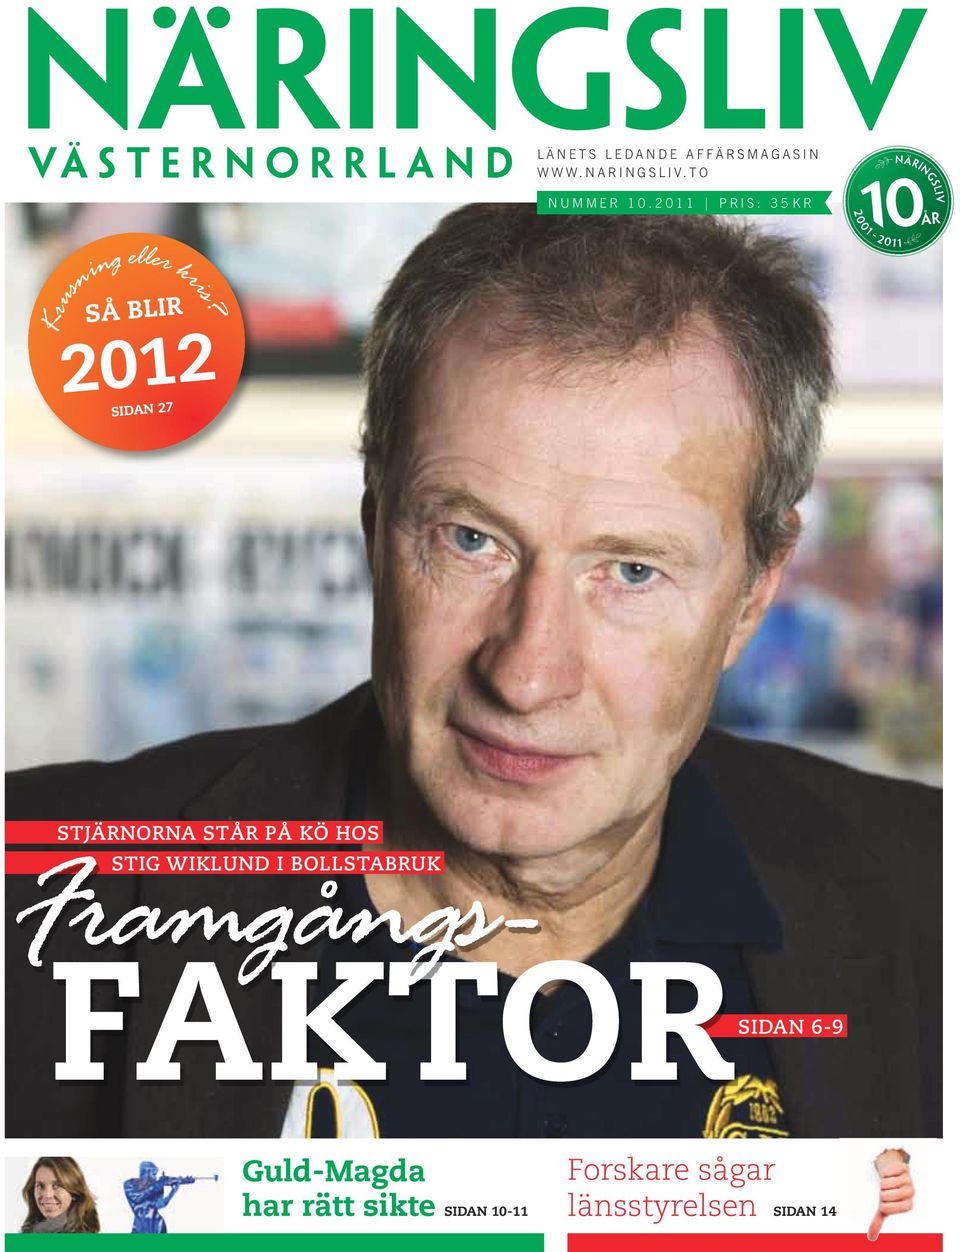 2012 Sidan 27 Stjärnorna står på kö hos Framgångs- Stig Wiklund i